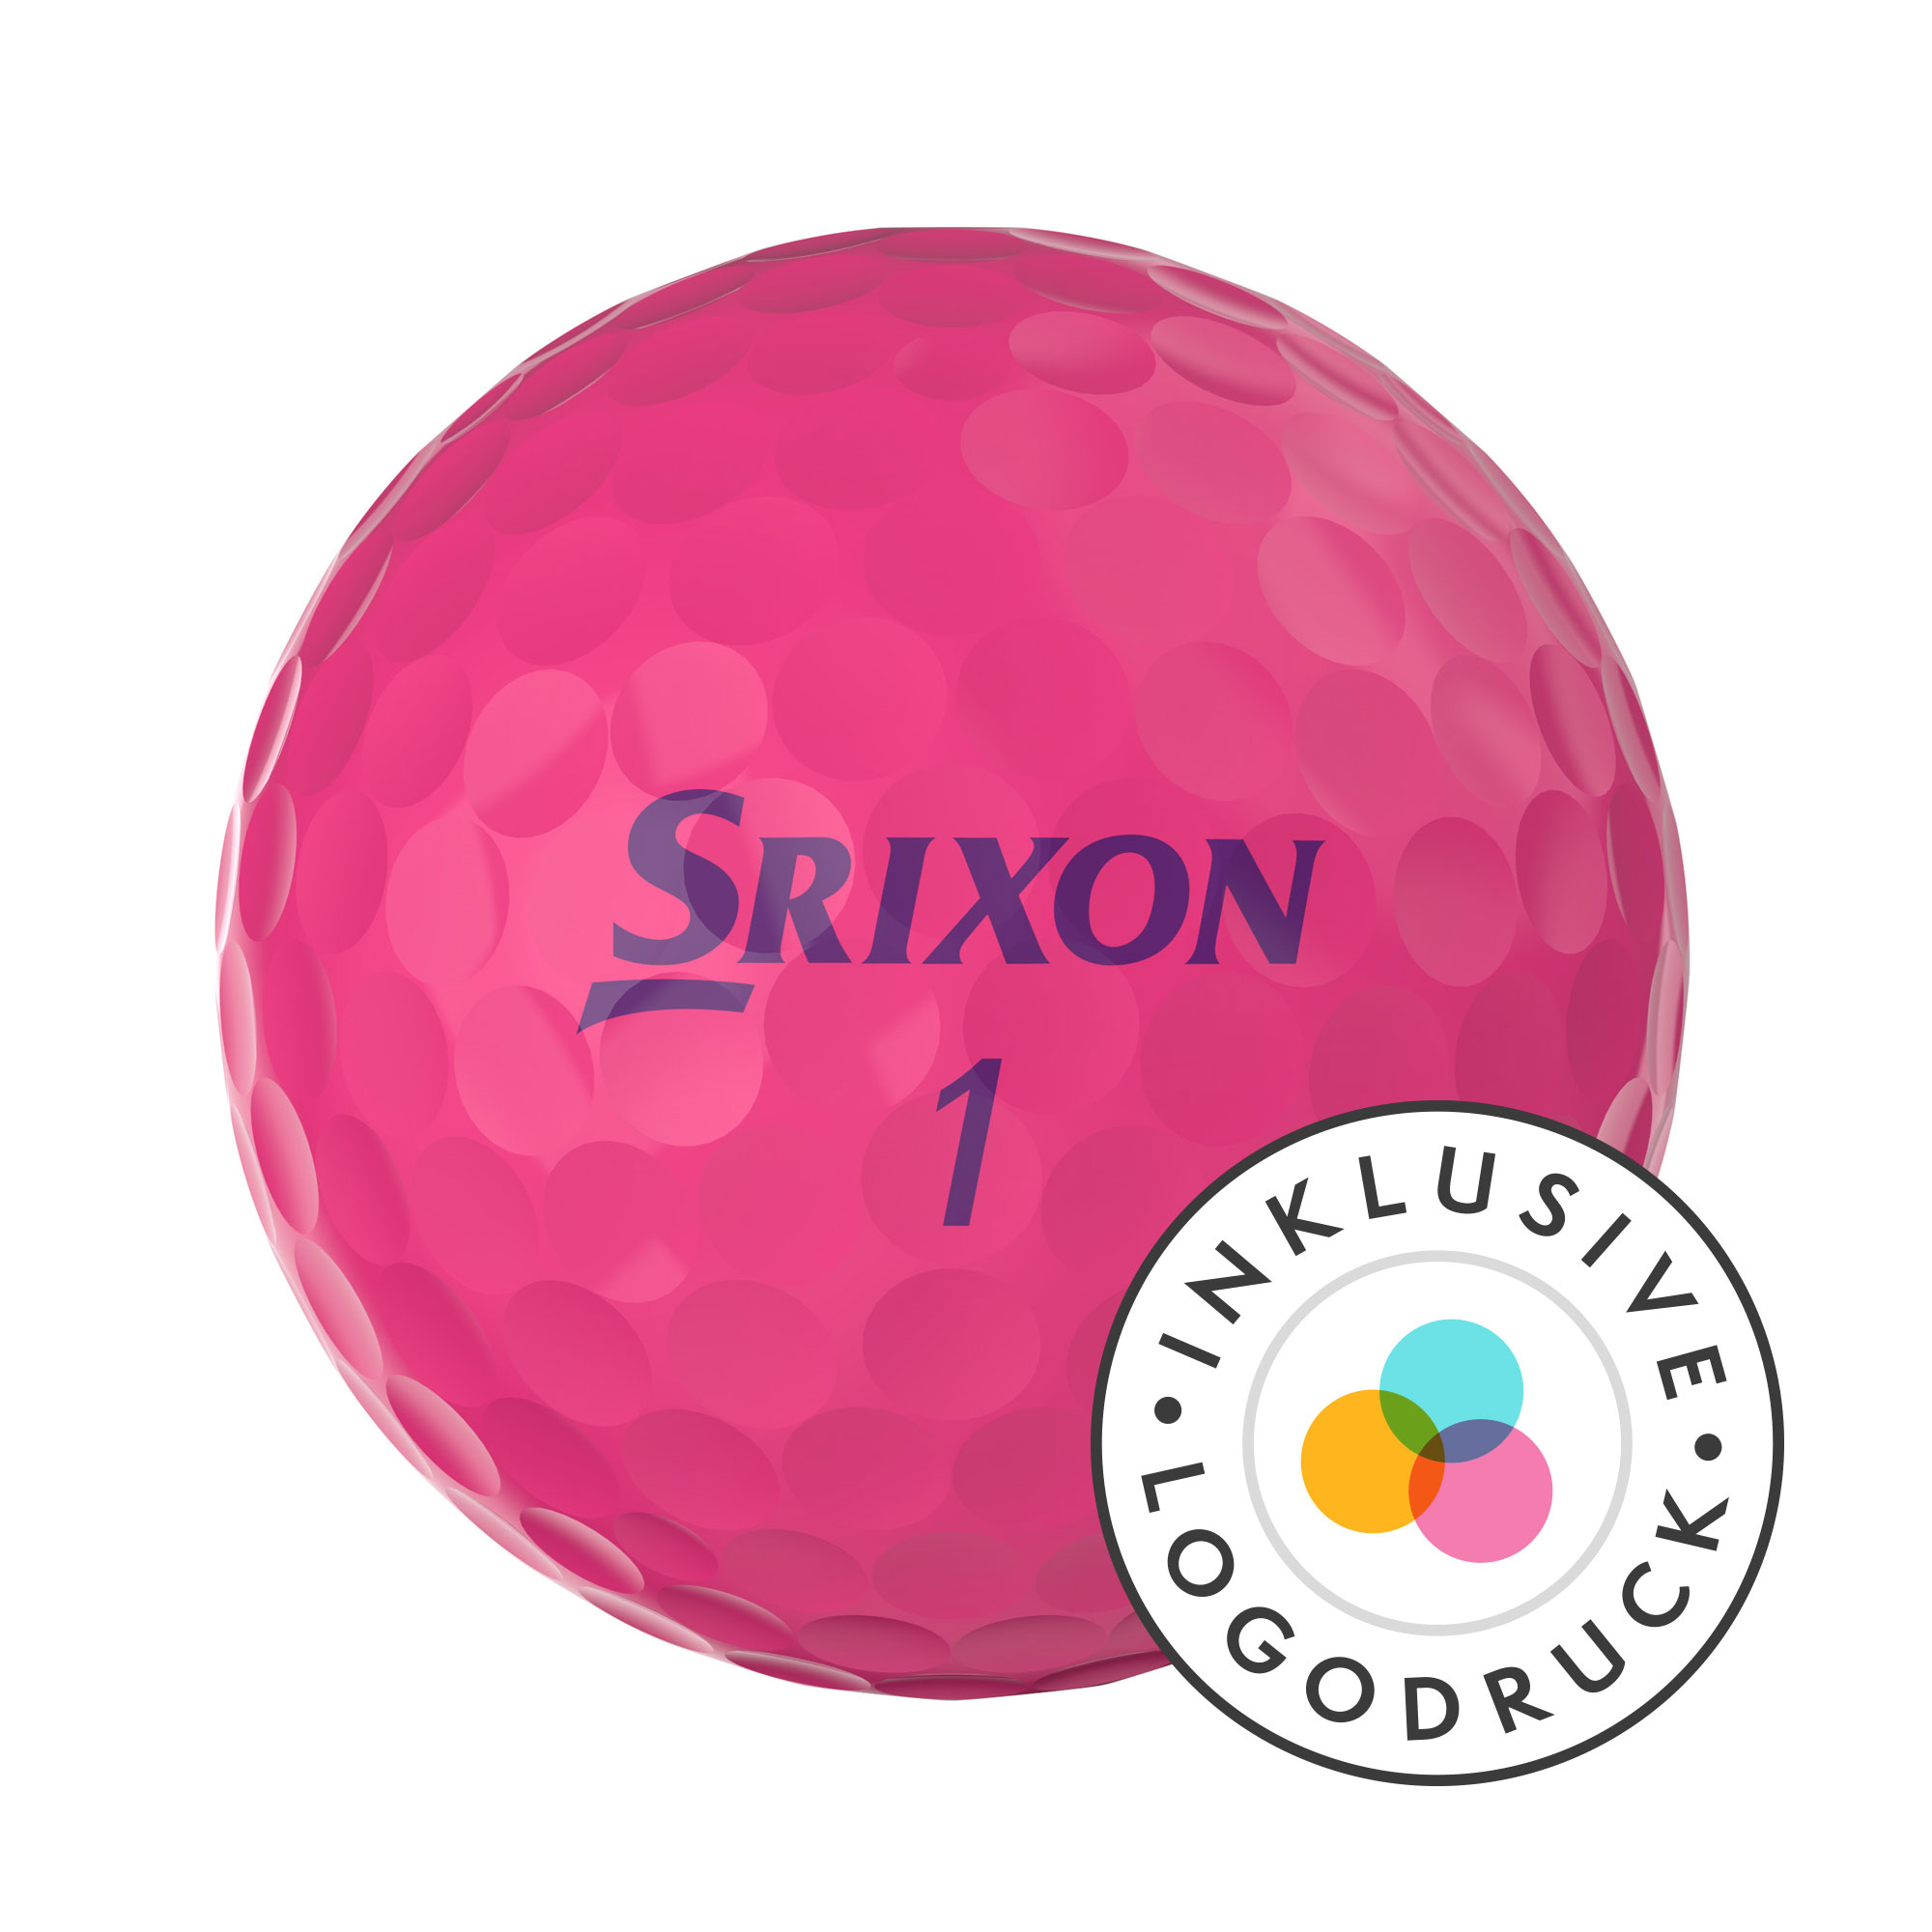 Srixon Soft Feel Lady Golfbälle bedruckt, pink (VPE à 12 Bälle)